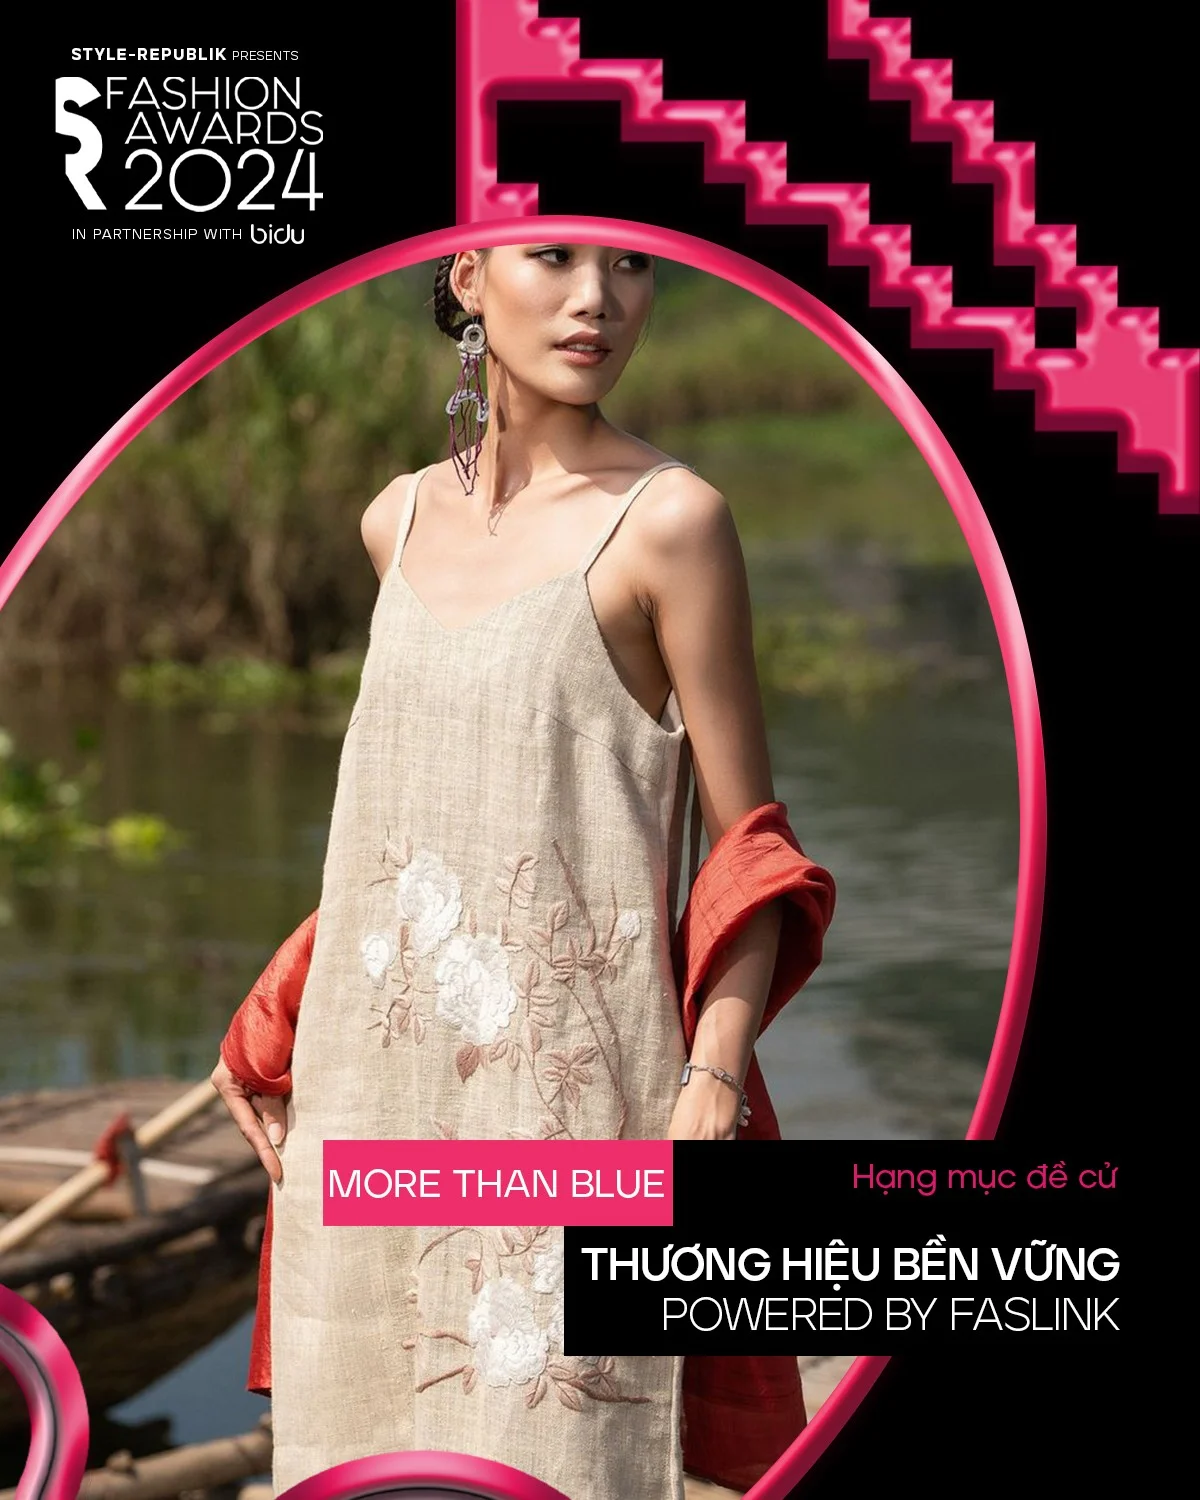 SR Fashion Awards 2024 x Faslink: Tôn vinh thời trang “xanh” thông qua hạng mục Thương hiệu Bền vững Powered by Faslink